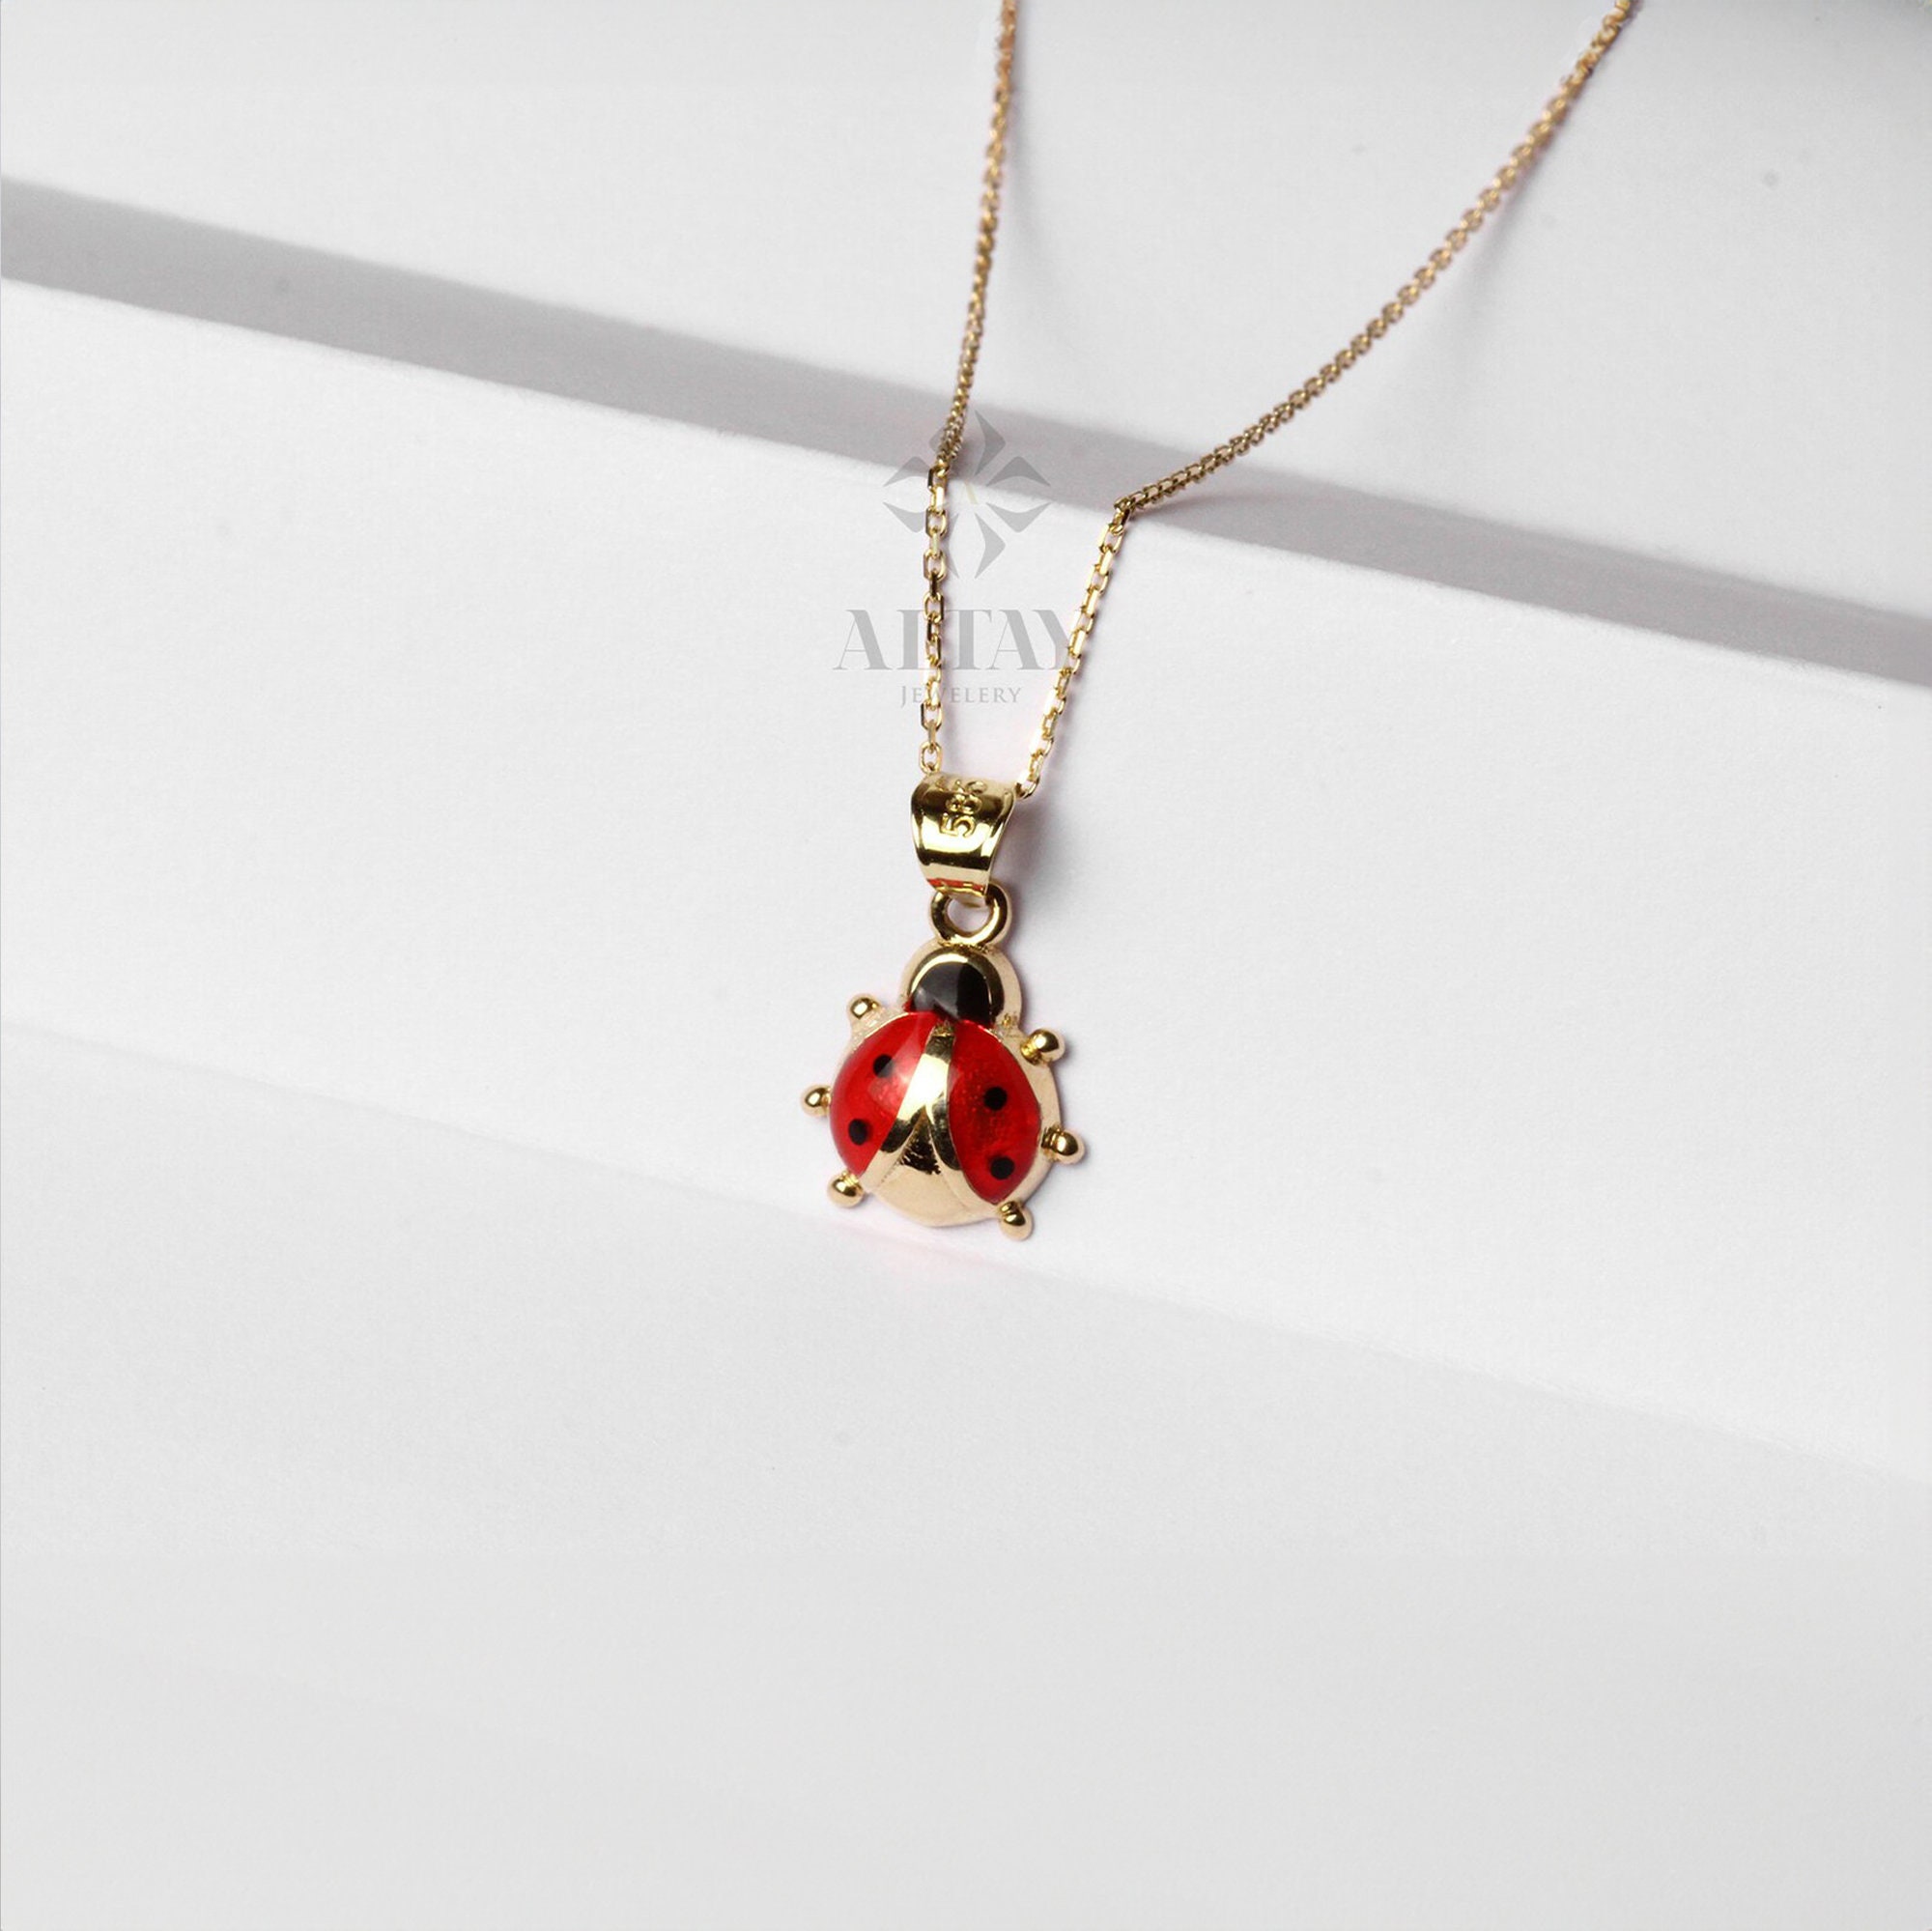 Gold 18 K with enamelled ladybug necklace